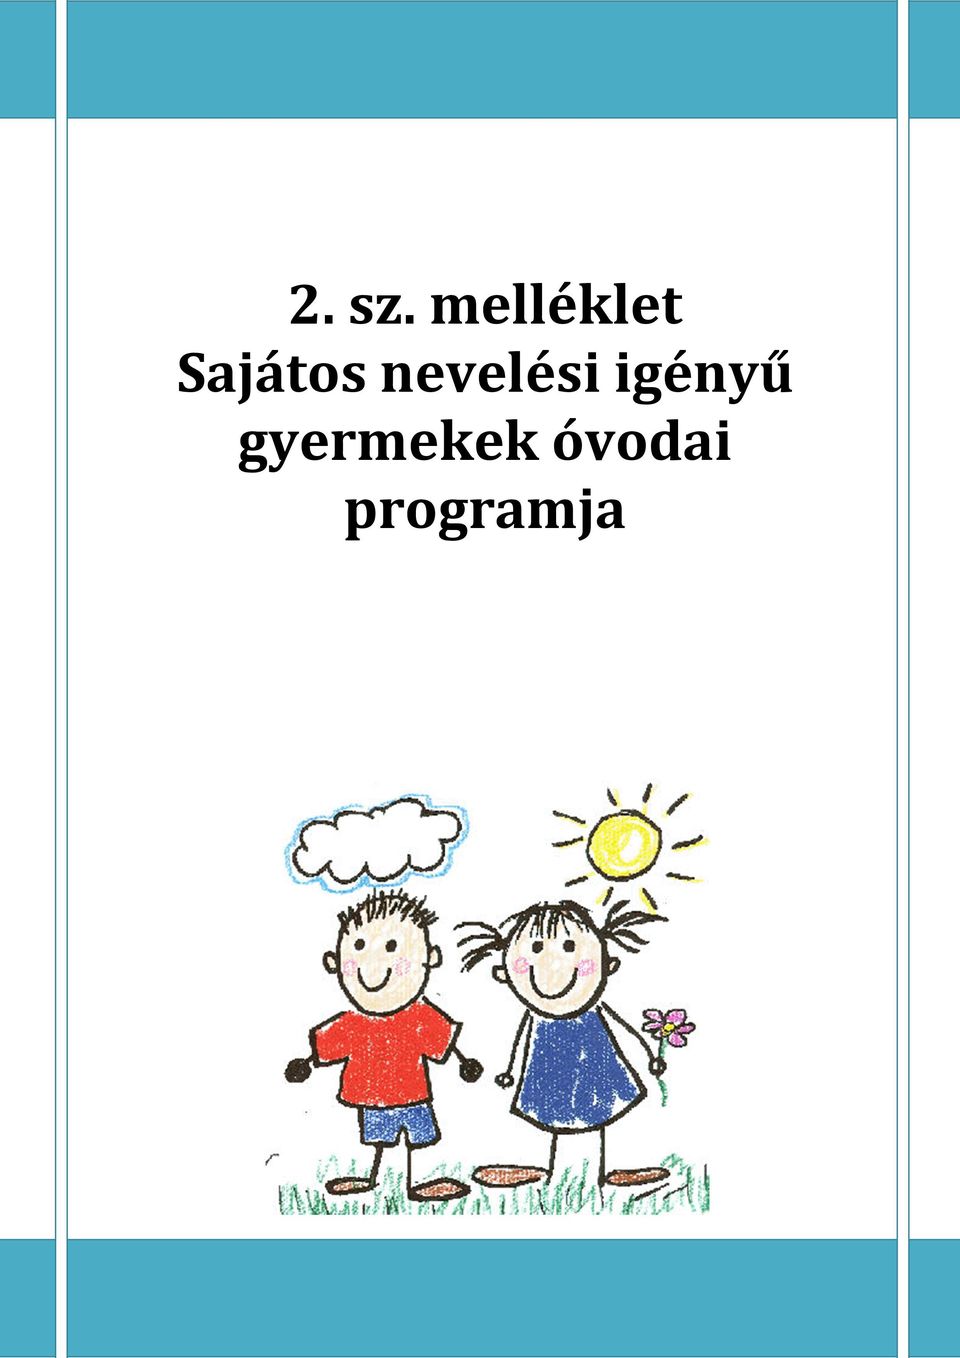 2. sz. melléklet Sajátos nevelési igényű gyermekek óvodai programja - PDF  Free Download